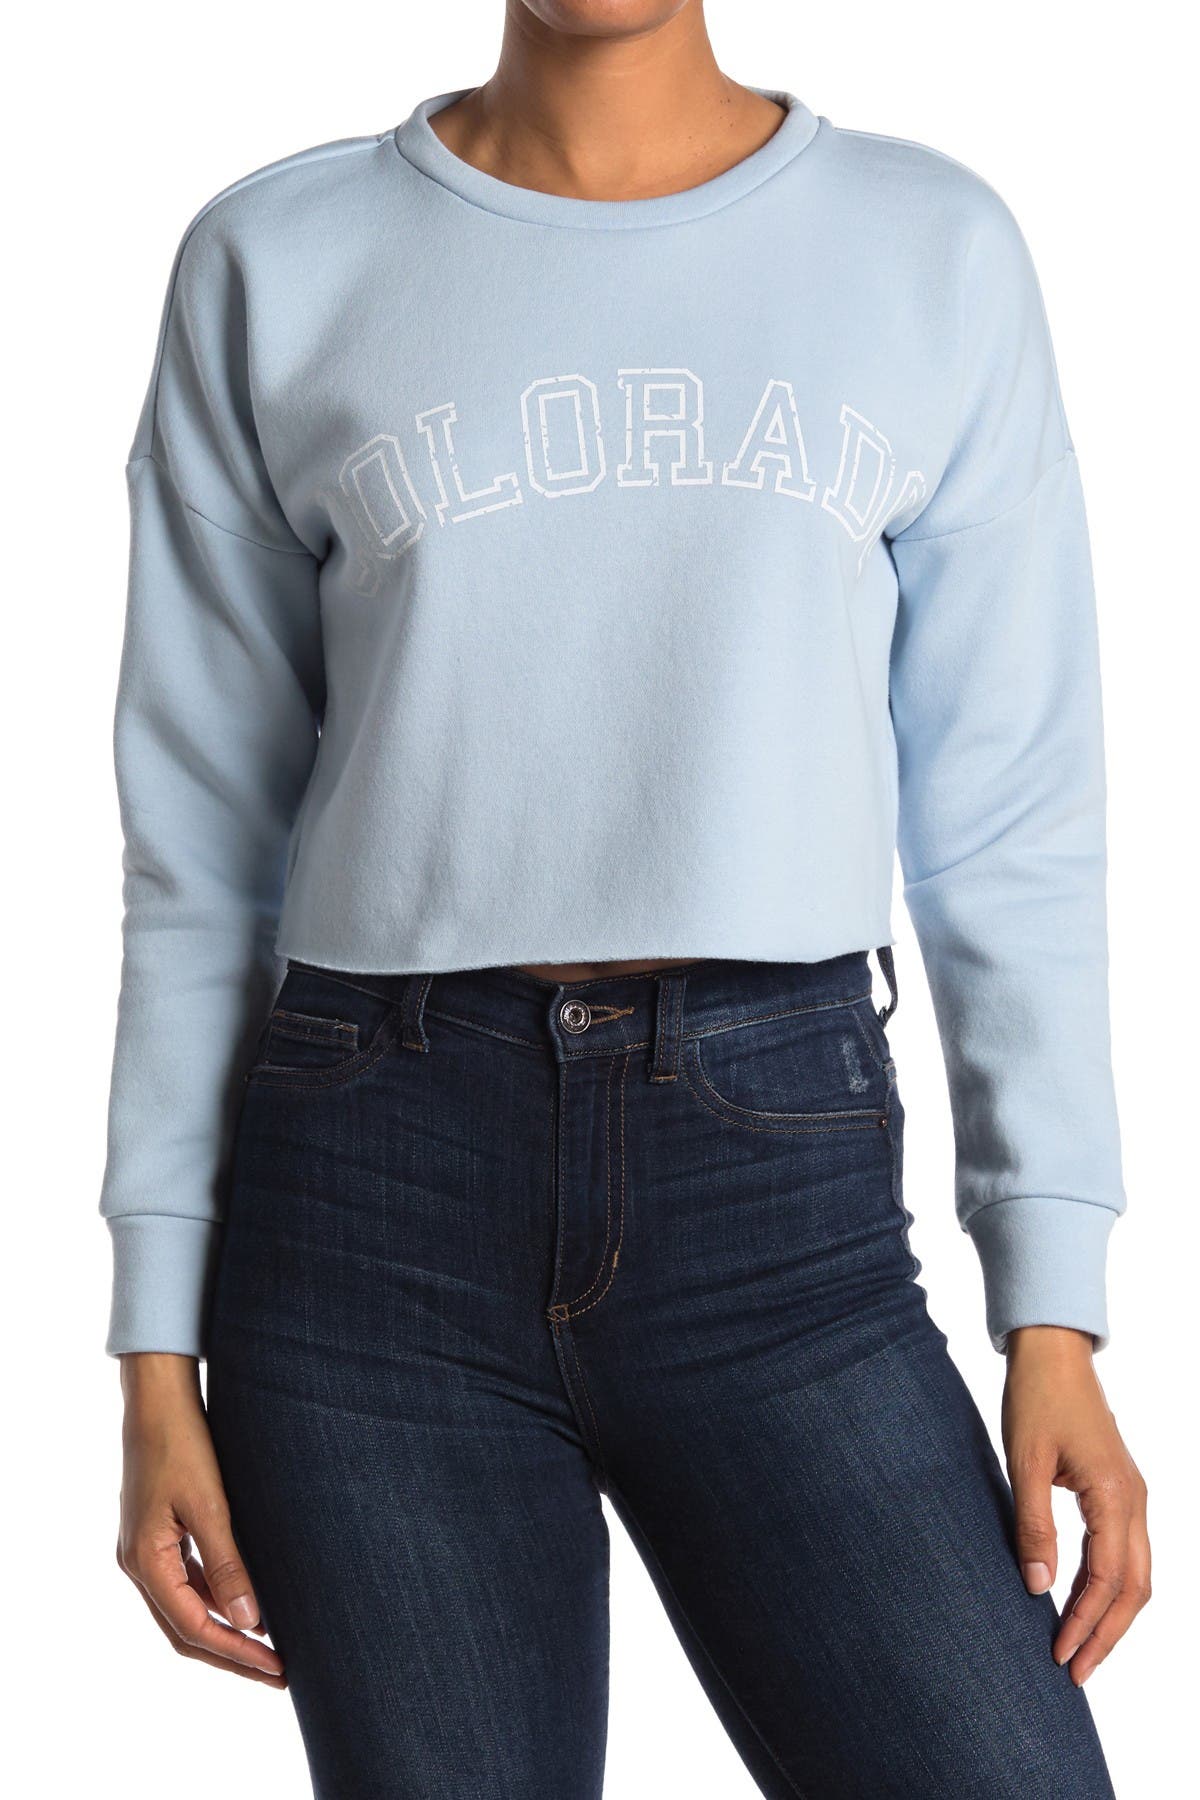 Abound Cropped Graphic Pullover Sweatshirt In Medium Blue